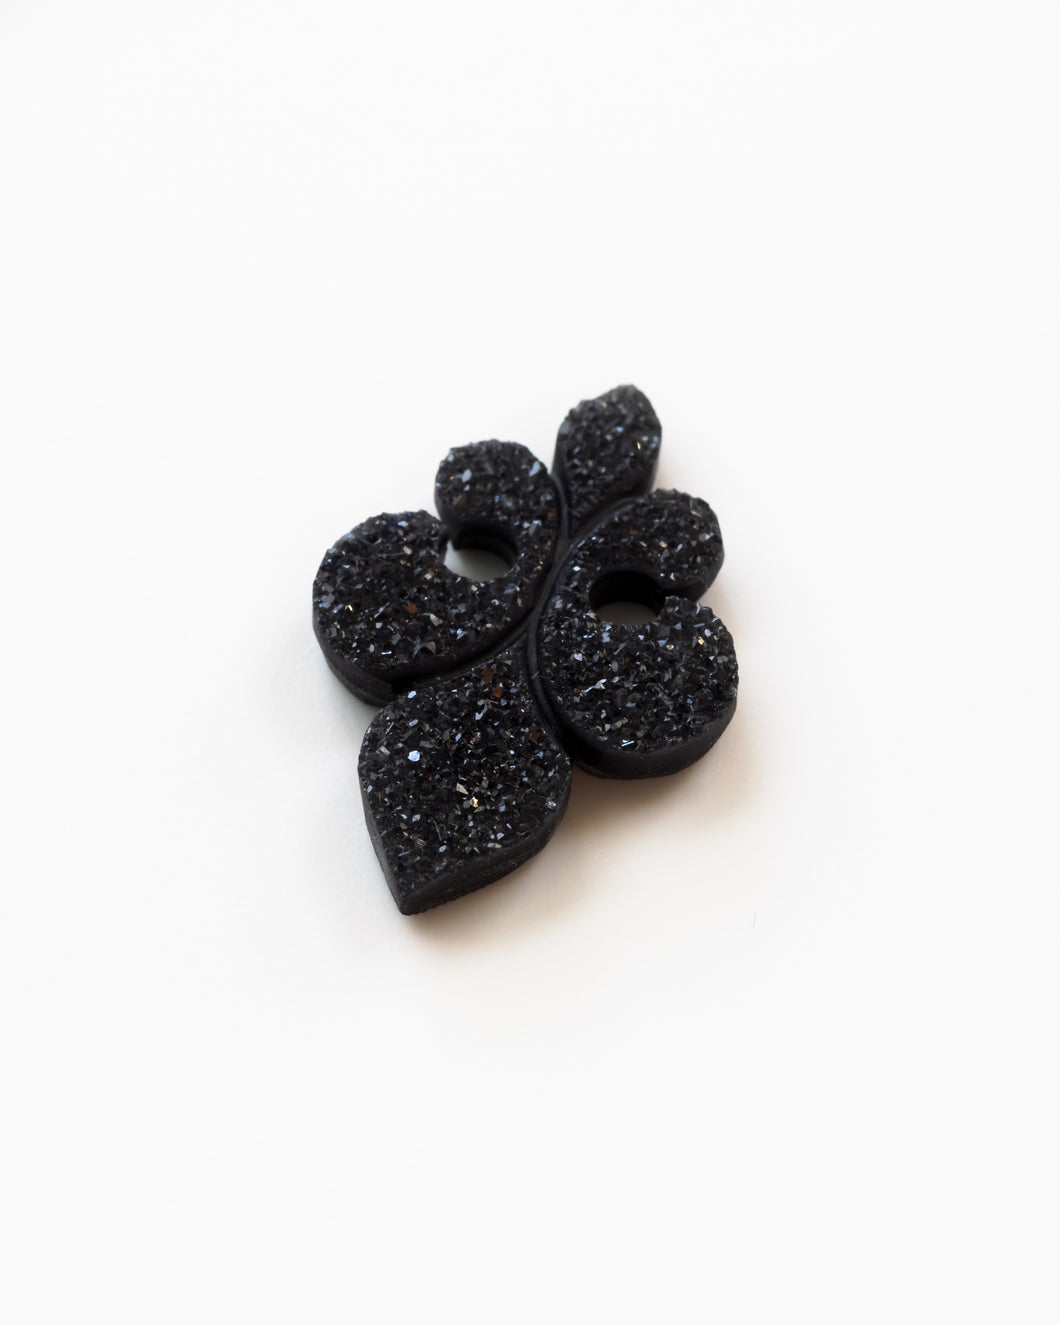 Black Fleur-de-lis Agate Drusy